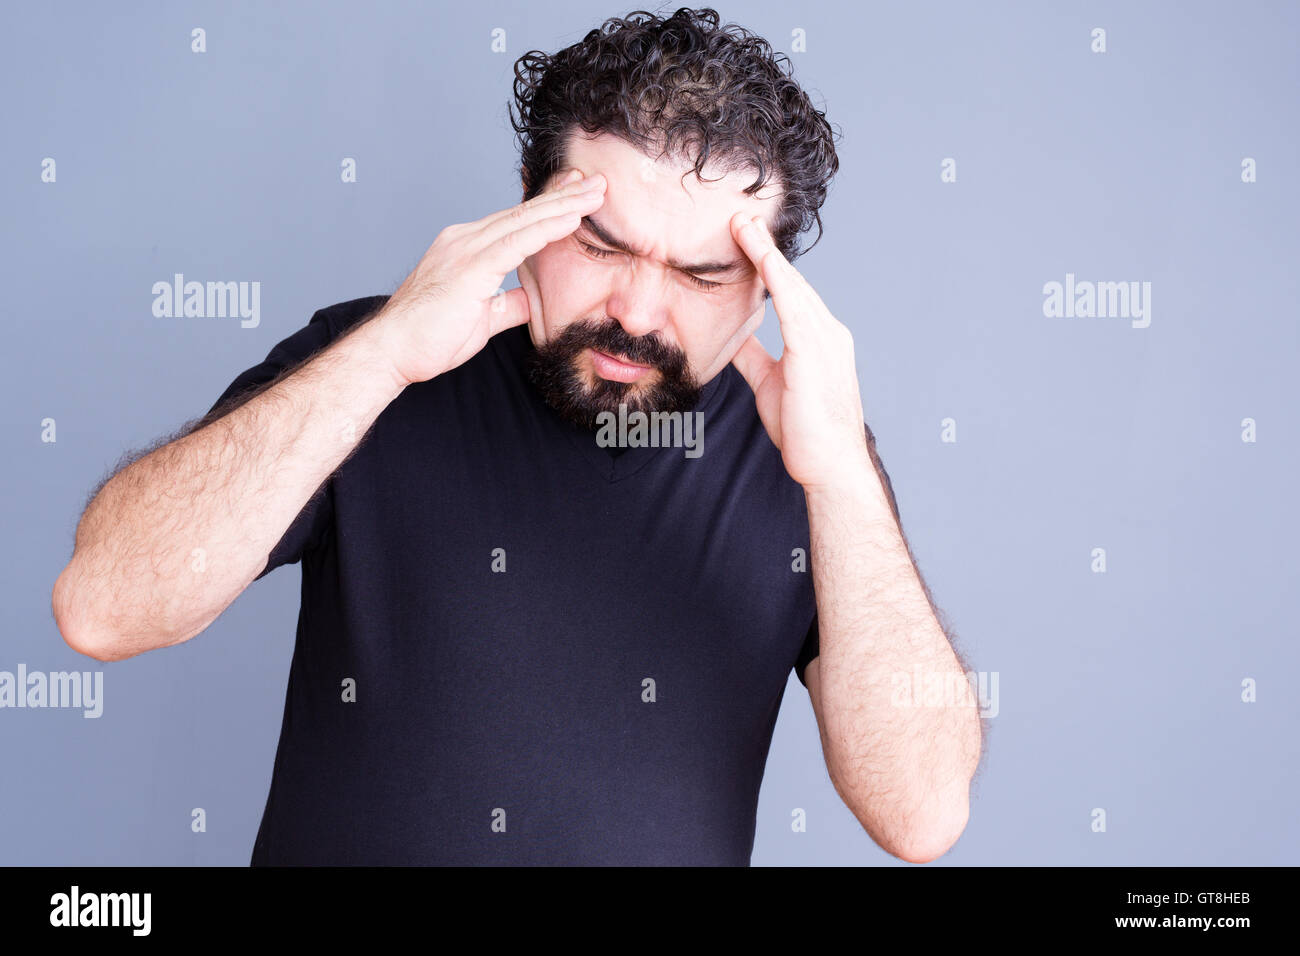 Einzelner überarbeitet Mann mit Bart reiben Stirn vor Schmerzen, als ob unter Kopfschmerzen leiden oder stress über grauen Hintergrund Stockfoto